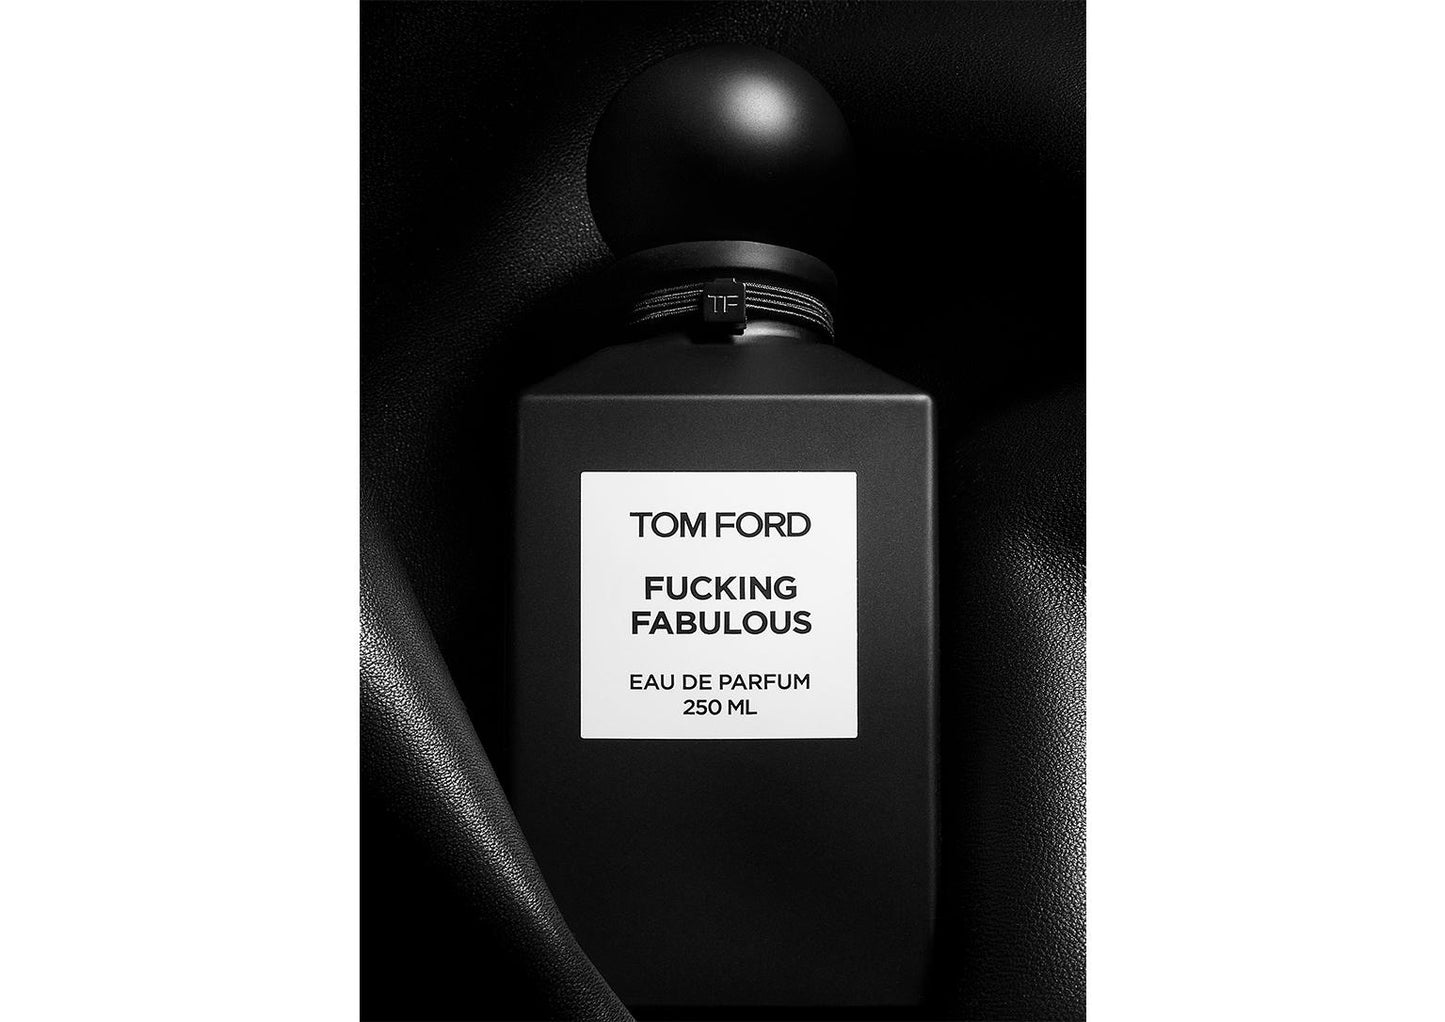 Tom Ford FUCKING FABULOUS eau de parfum